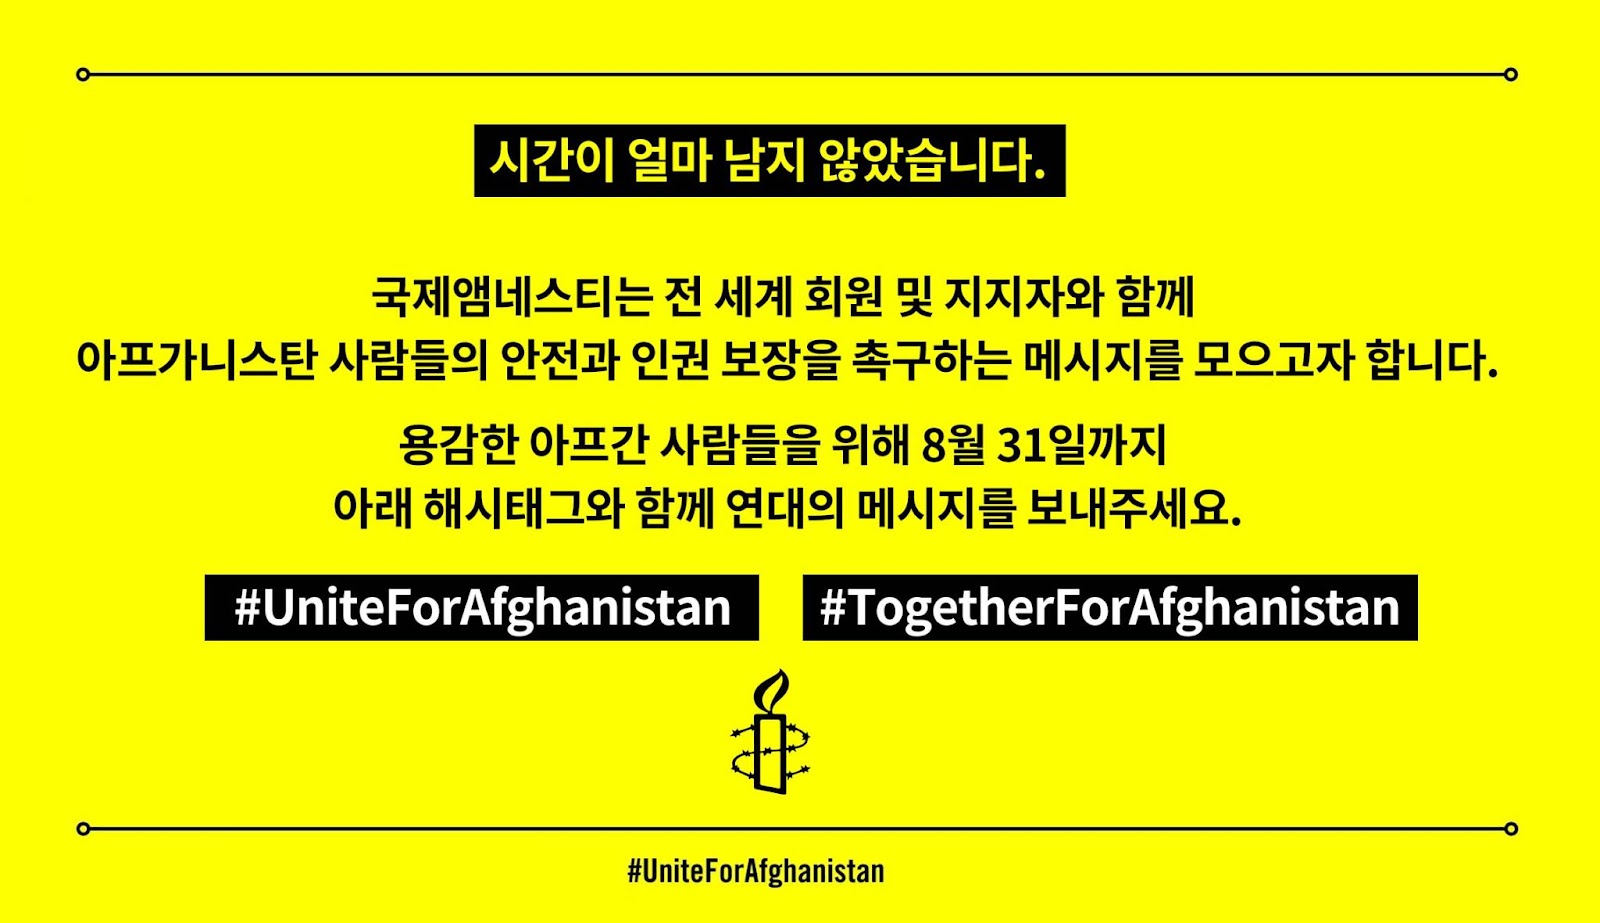 용감한 아프간 사람들을 위해 8월 31일까지 연대의 메세지를 보내주세요.